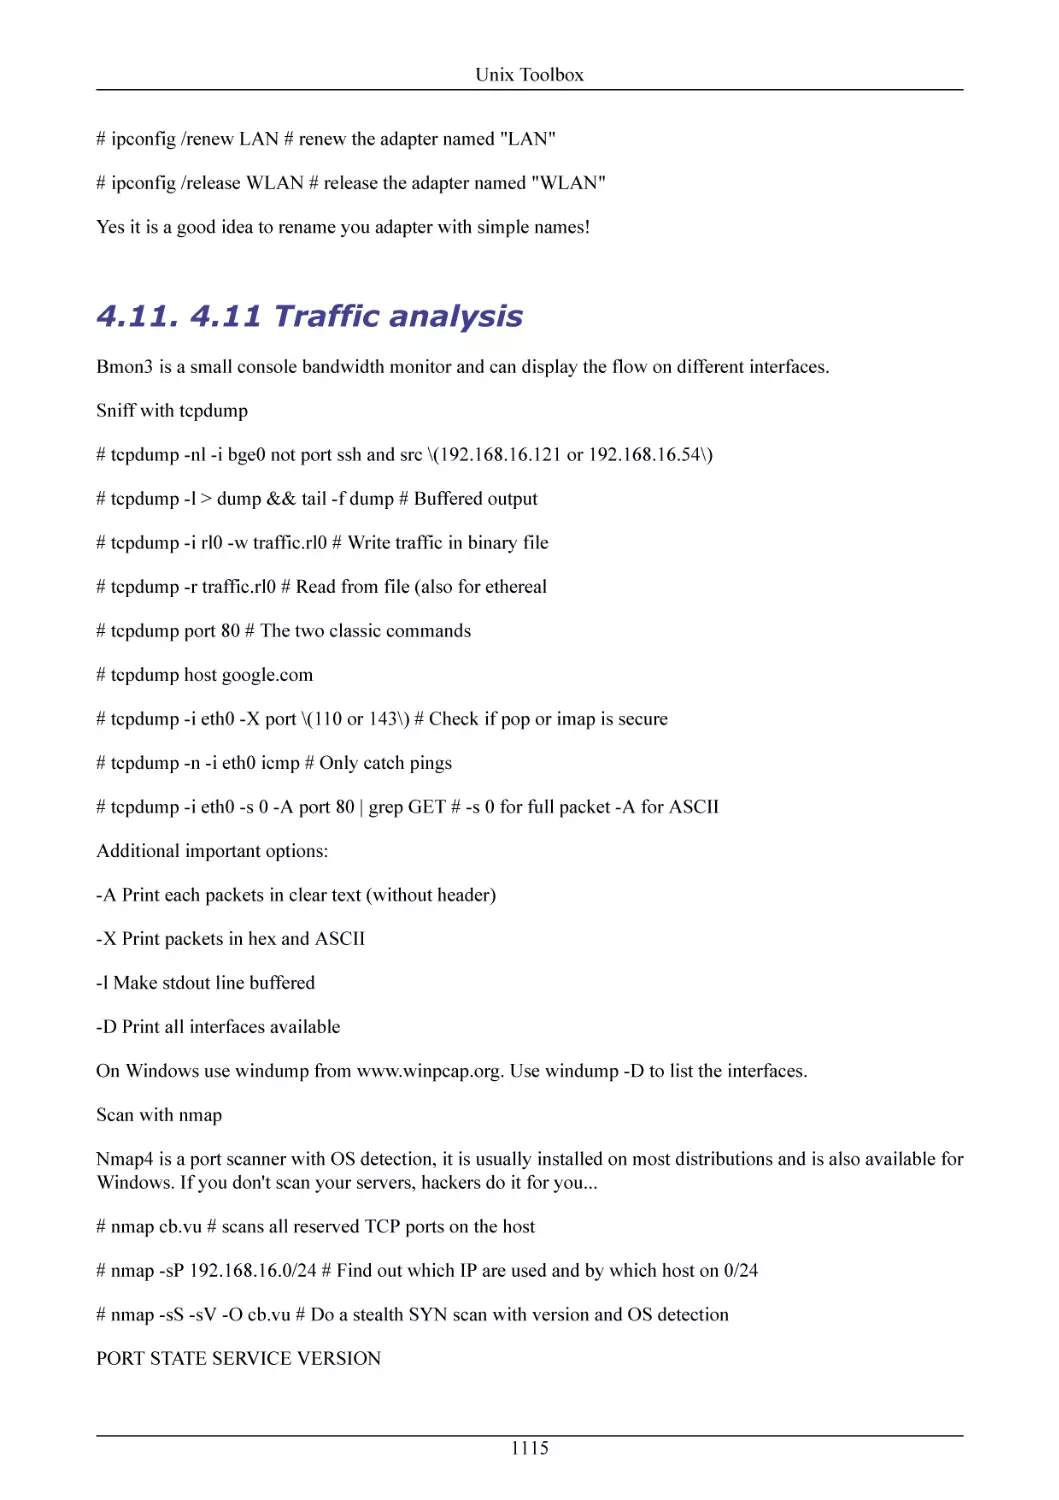 4.11 Traffic analysis